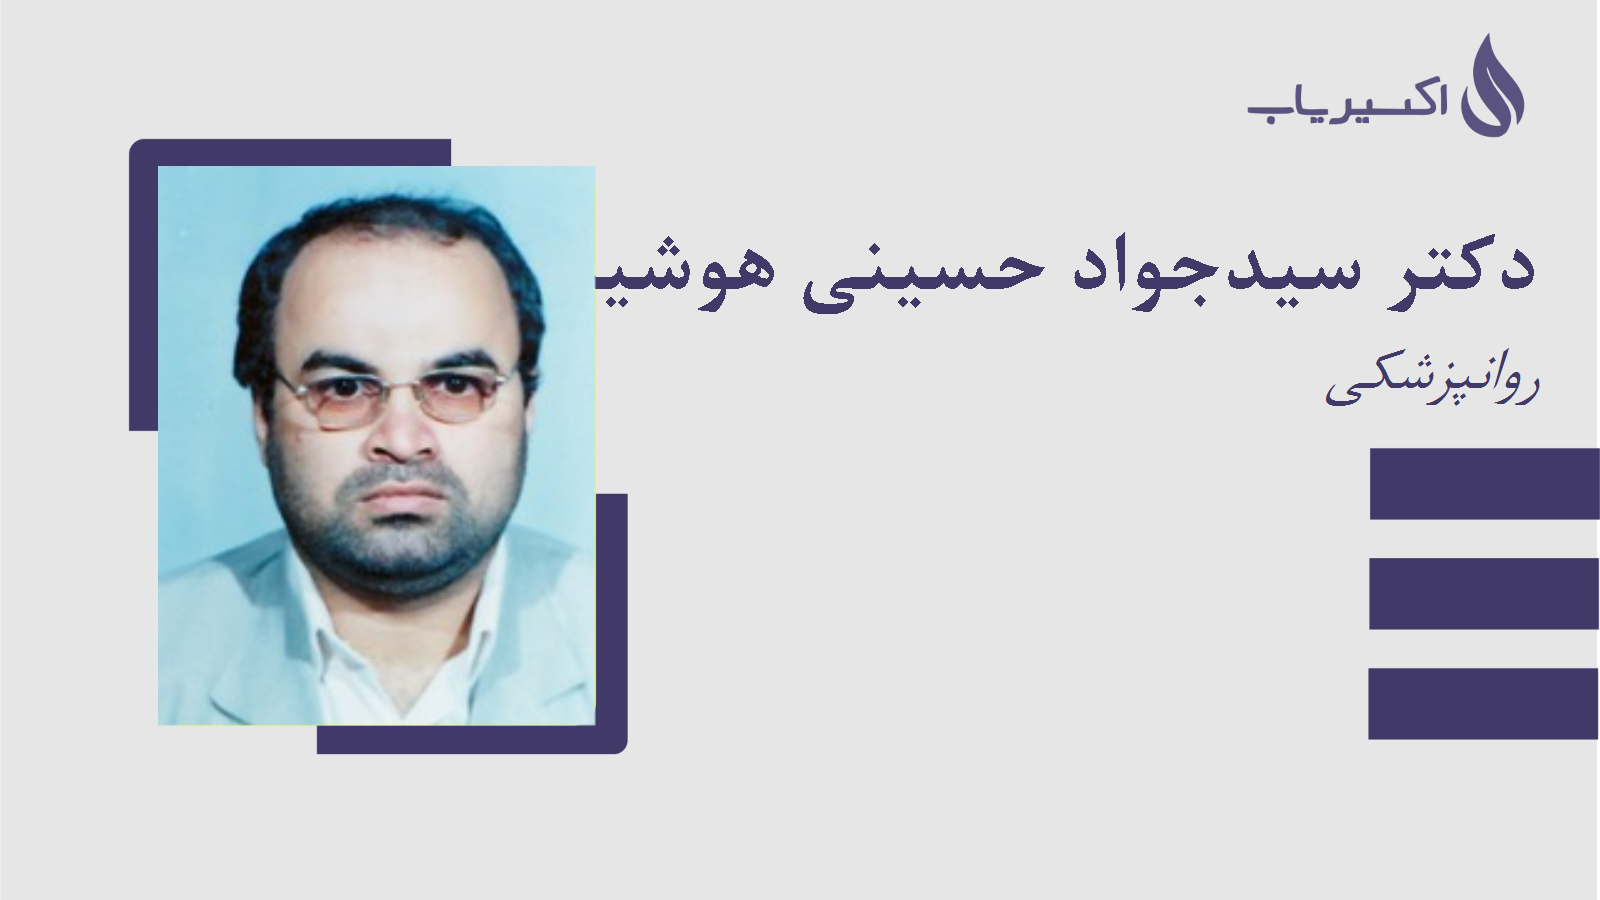 مطب دکتر سیدجواد حسینی هوشیار